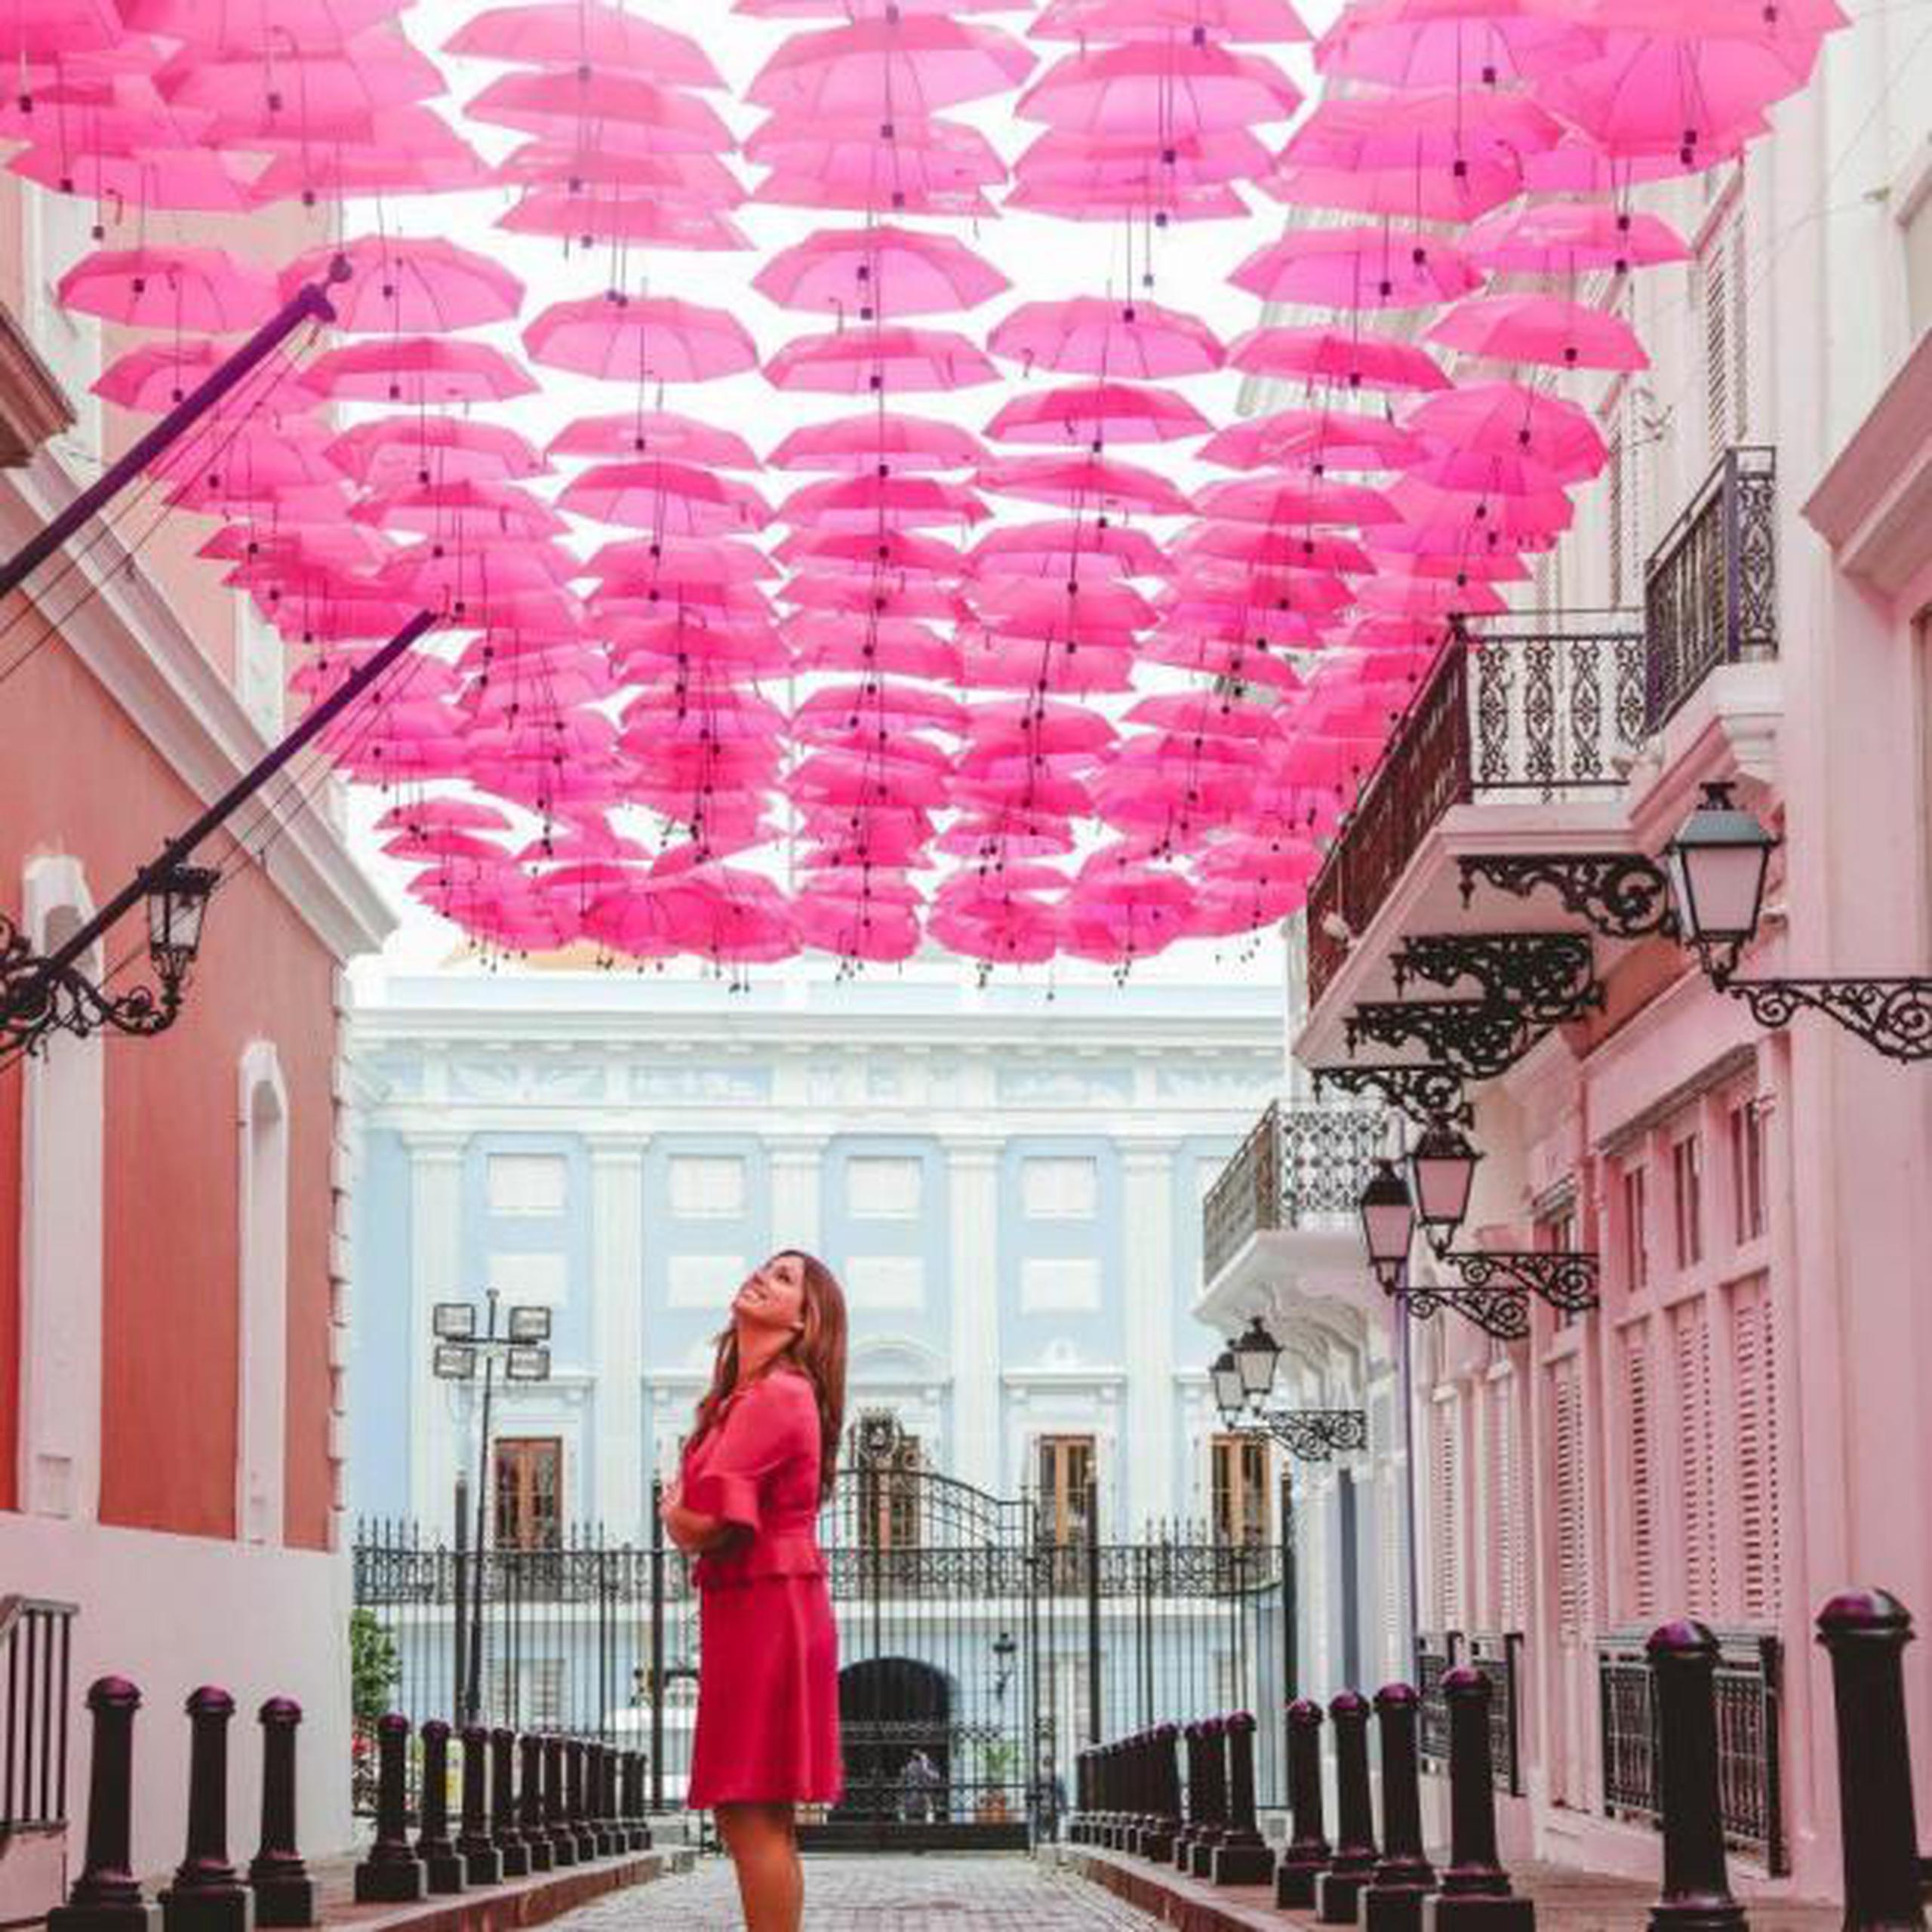 "La Fortaleza se une a esta iniciativa mediante la instalación de las emblemáticas sombrillas, ahora color rosa, que simbolizan protección, solidaridad, respeto e igualdad". (Suministrada)